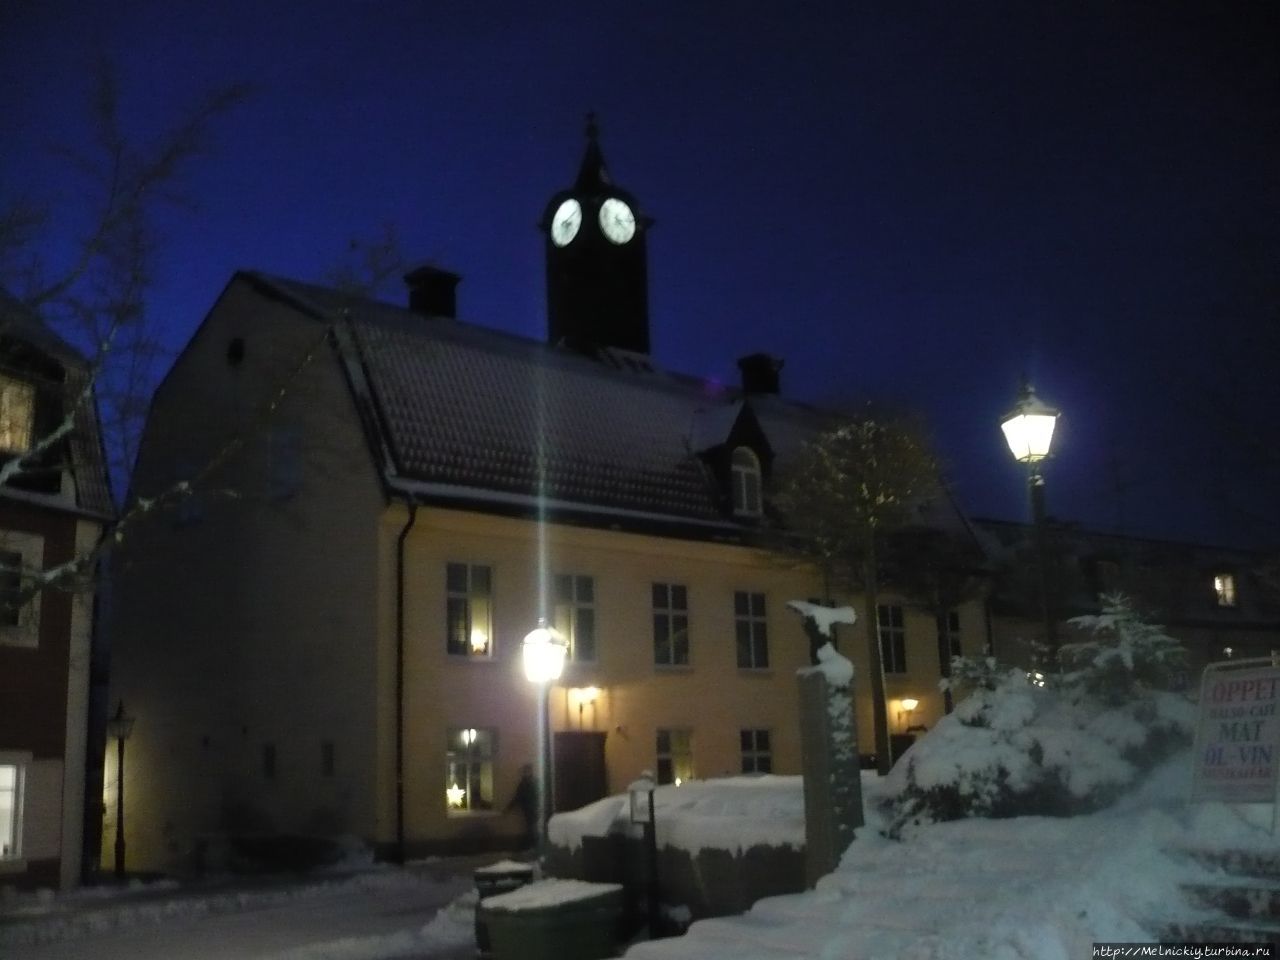 Вечерняя прогулка по Энчёпингу Энчёпинг, Швеция